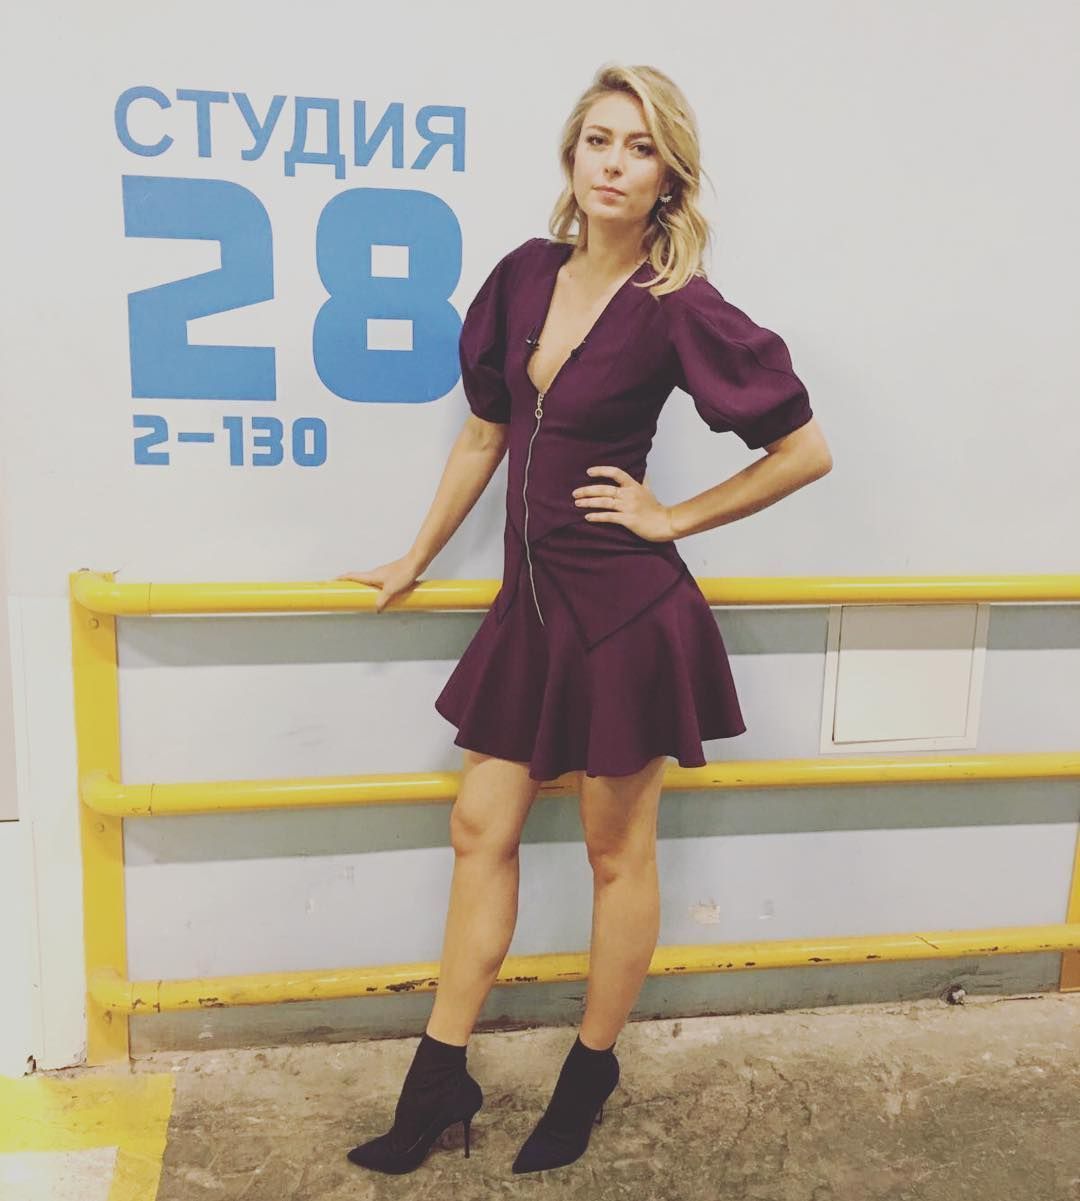 Maria Šarapovová na svém Instagramu